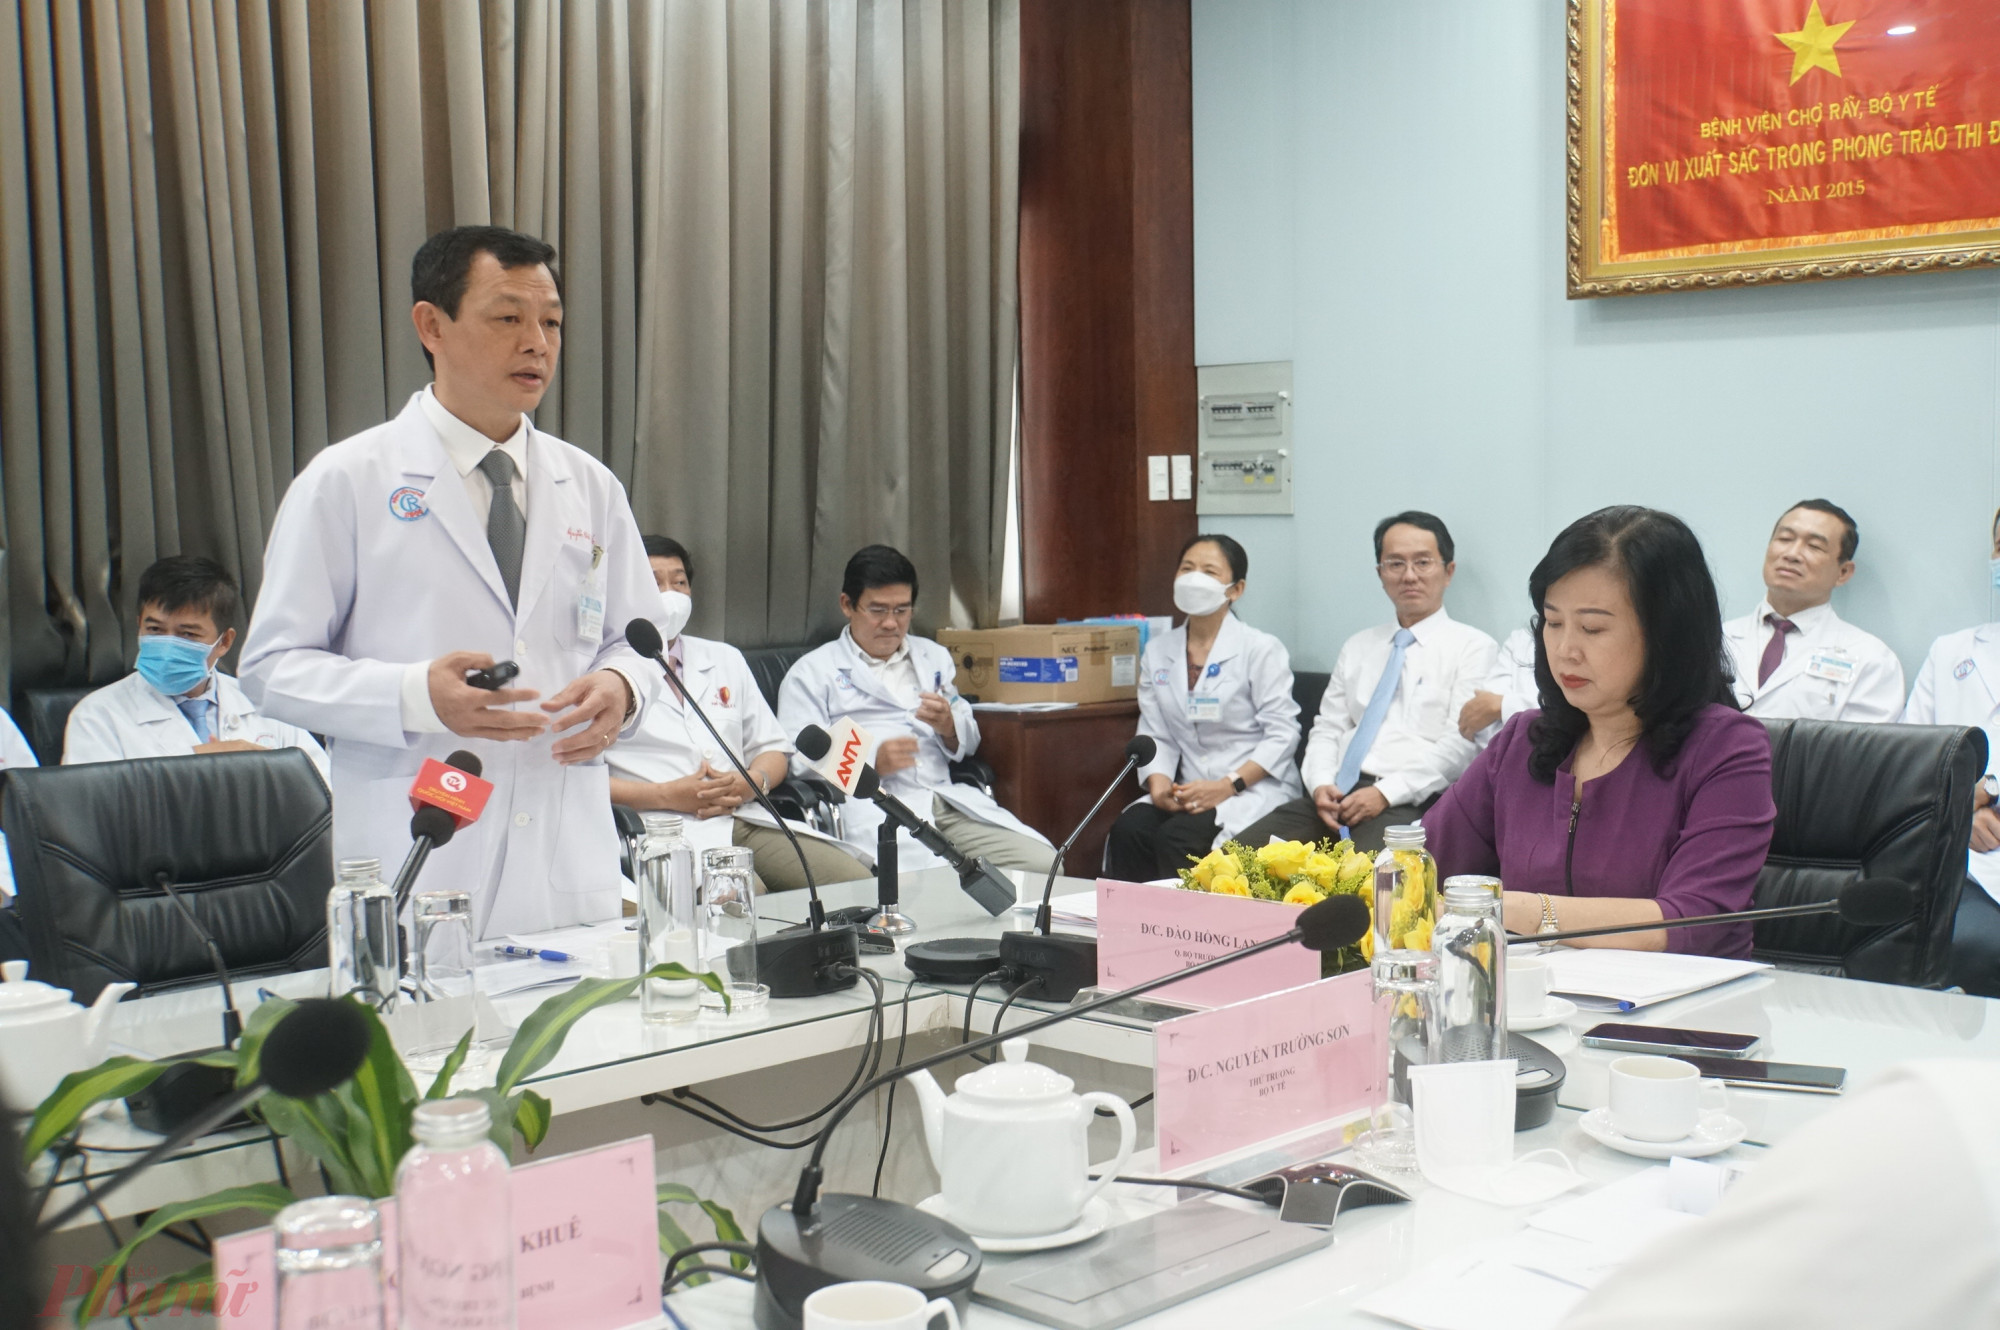 Giám đốc Bệnh viện Nguyễn Tri Thức (đứng) báo cáo công tác tại bệnh viện với quyền Bộ trưởng Bộ Y tế Đào Hồng Lan (áo tím)